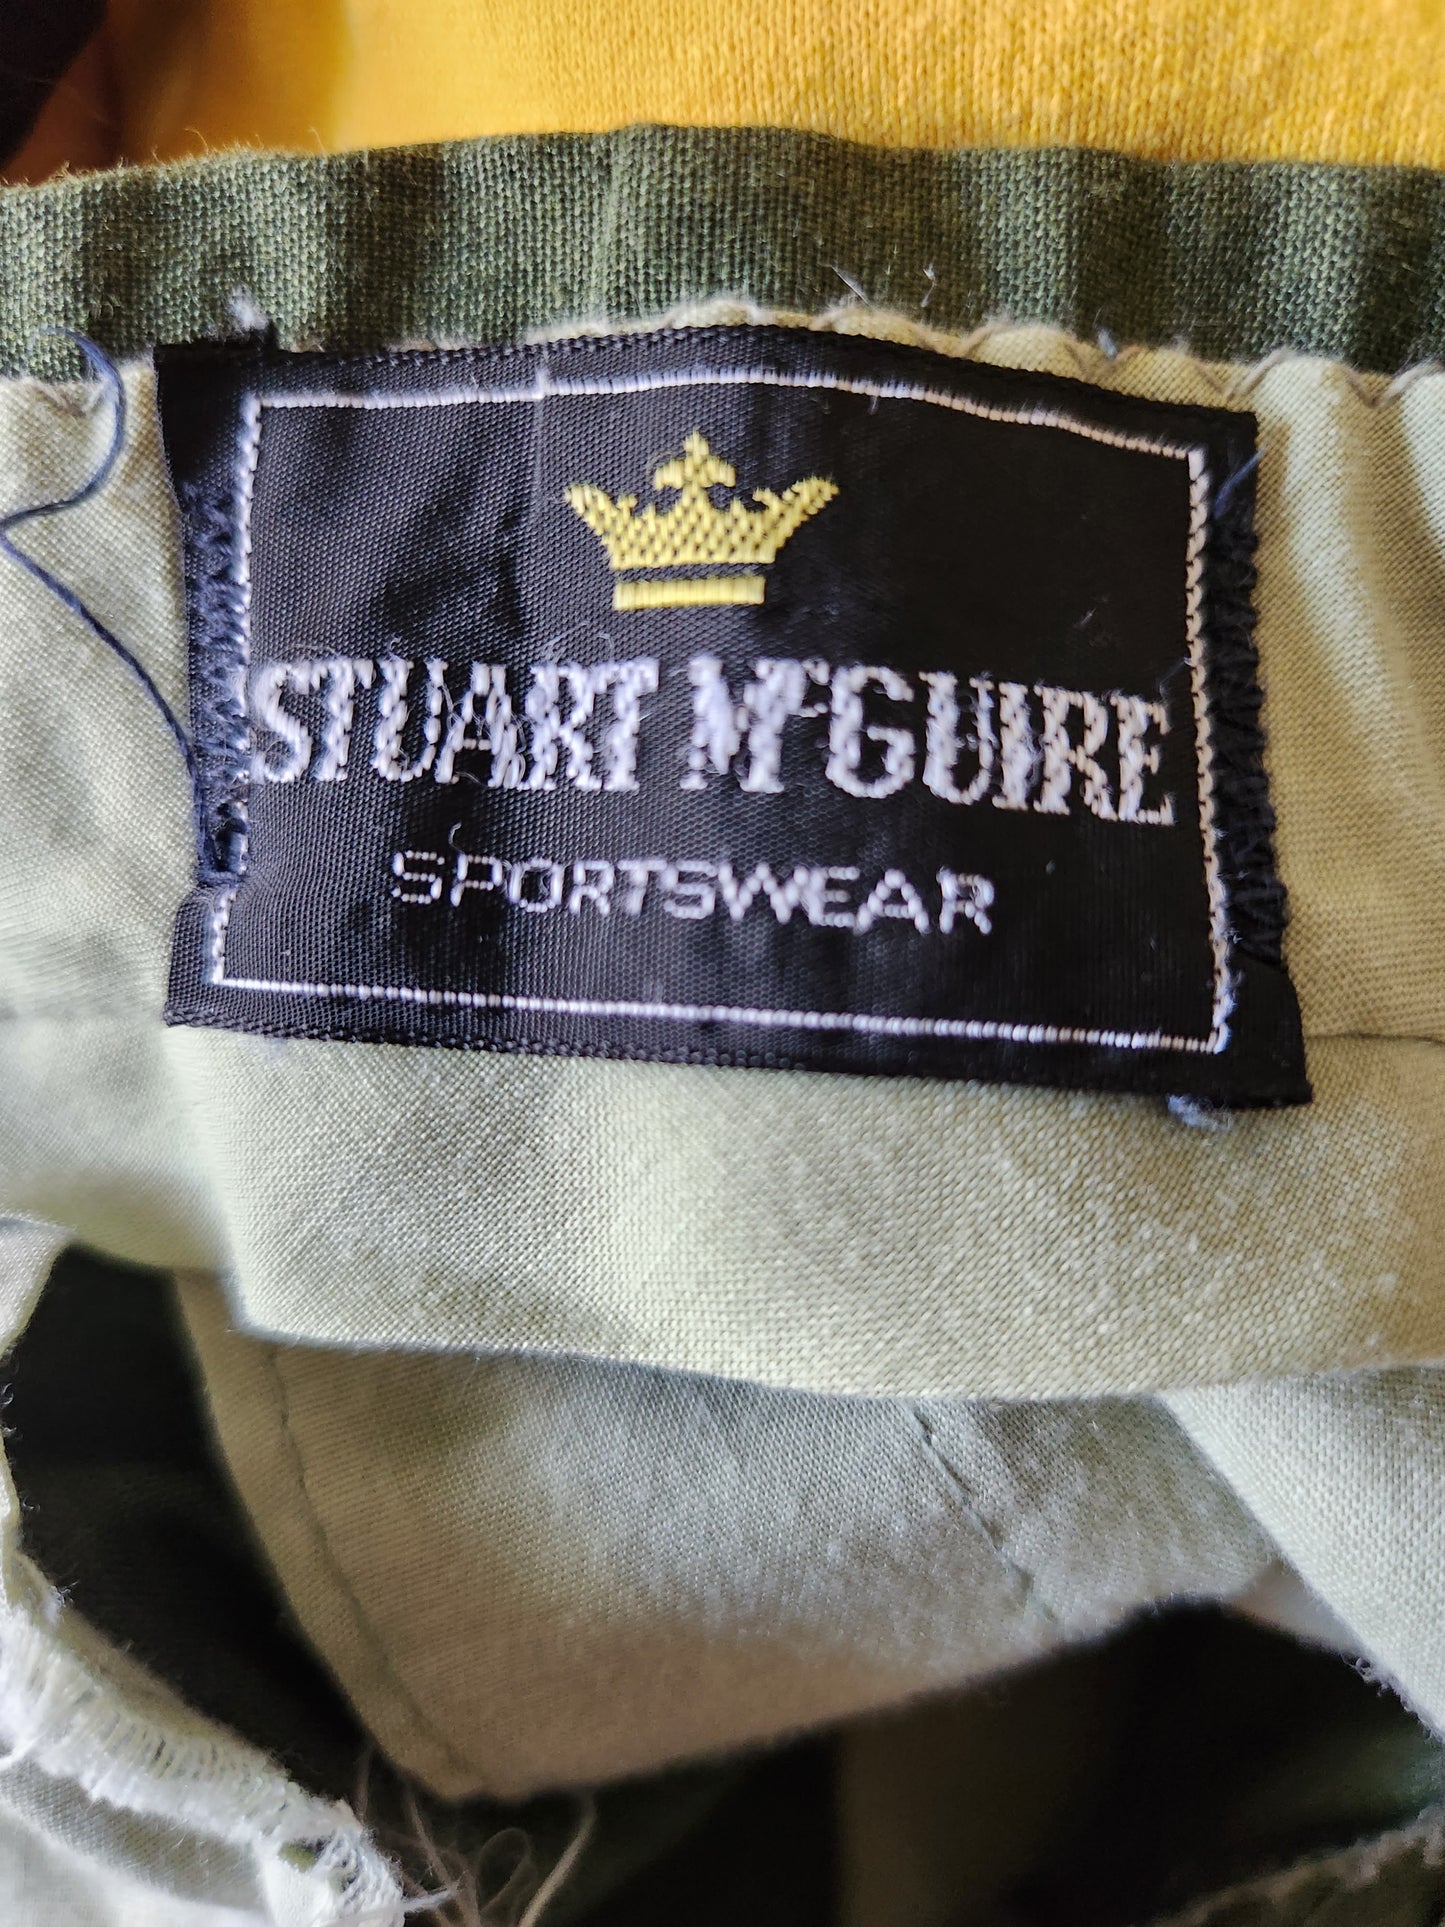 Vintage Green Shorts by Stuart McGuire Sportswear